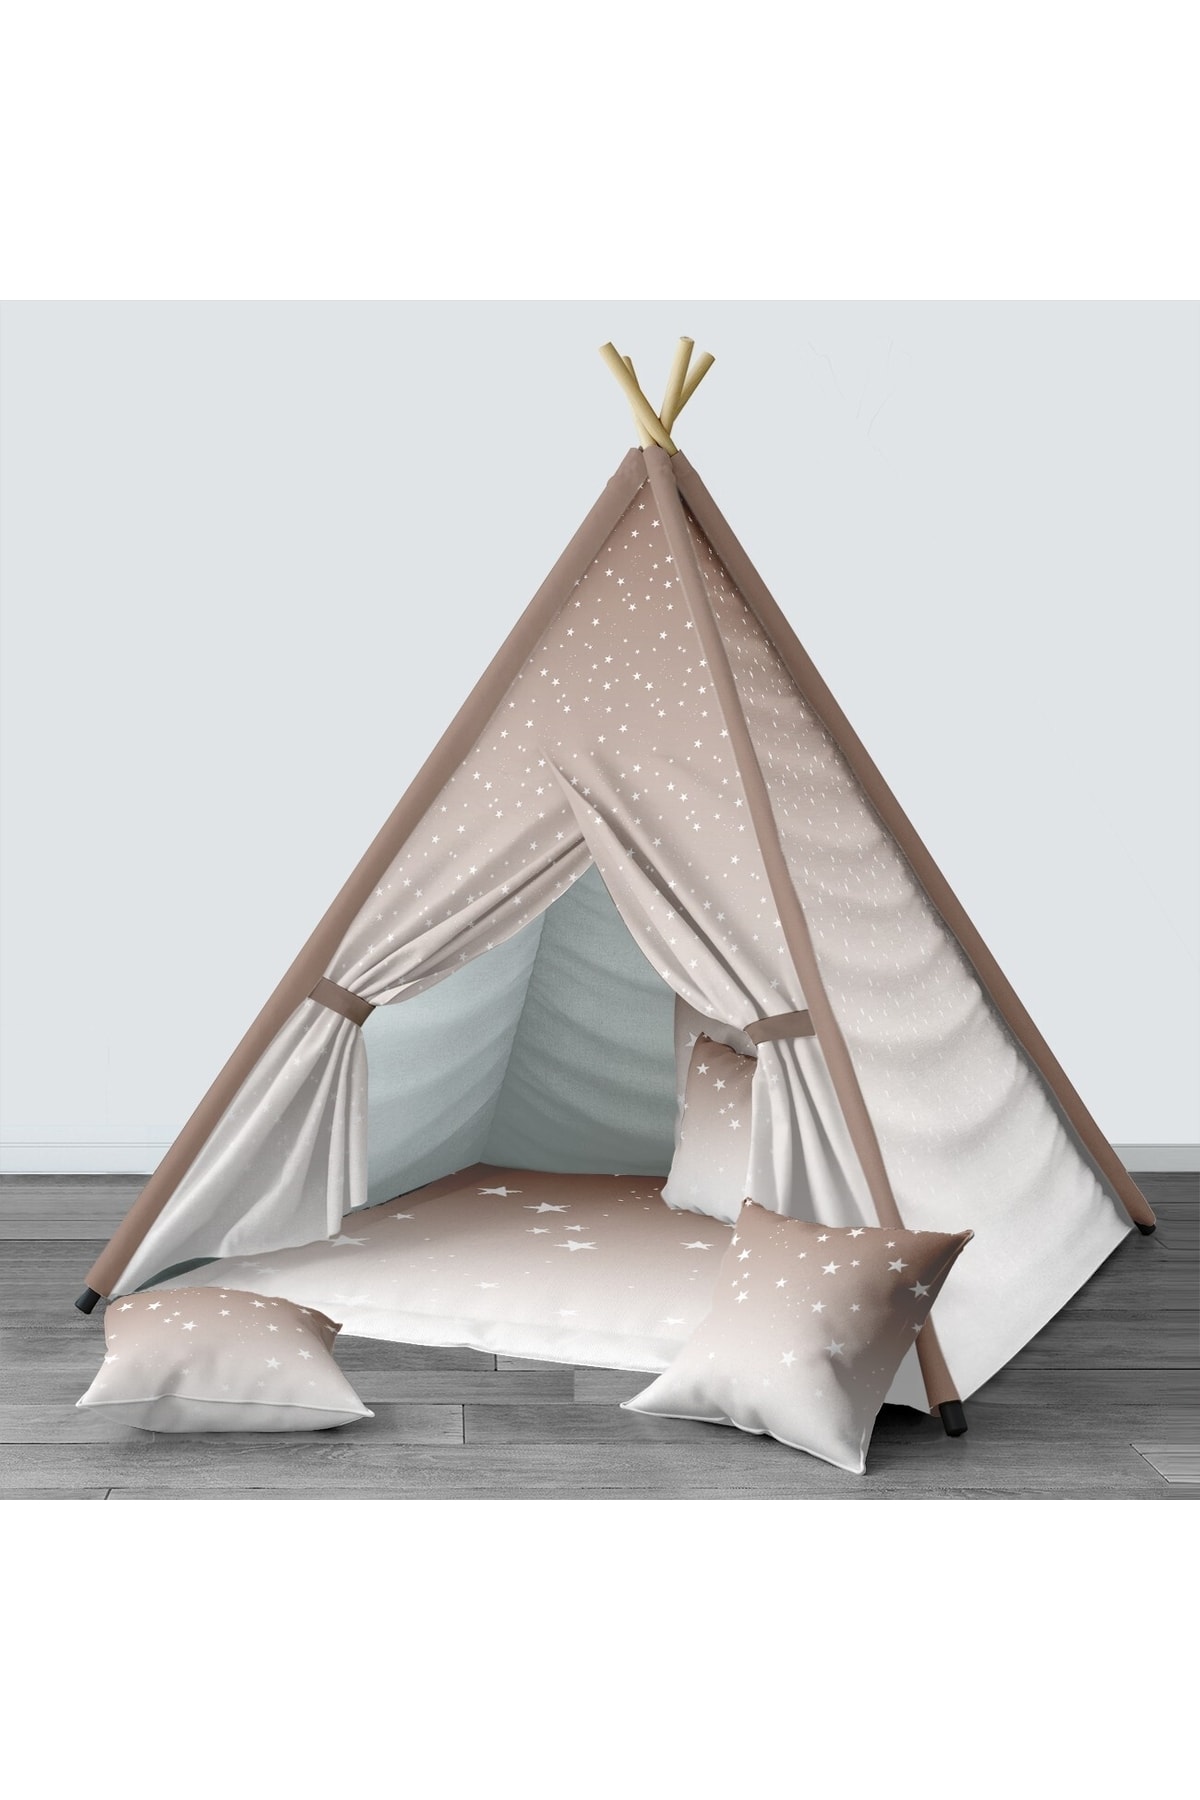 HET Concept Açık Kahverengi Bebek, Çocuk Odası Minderli/mindersiz Oyun Evi, Çadırı Model 1484